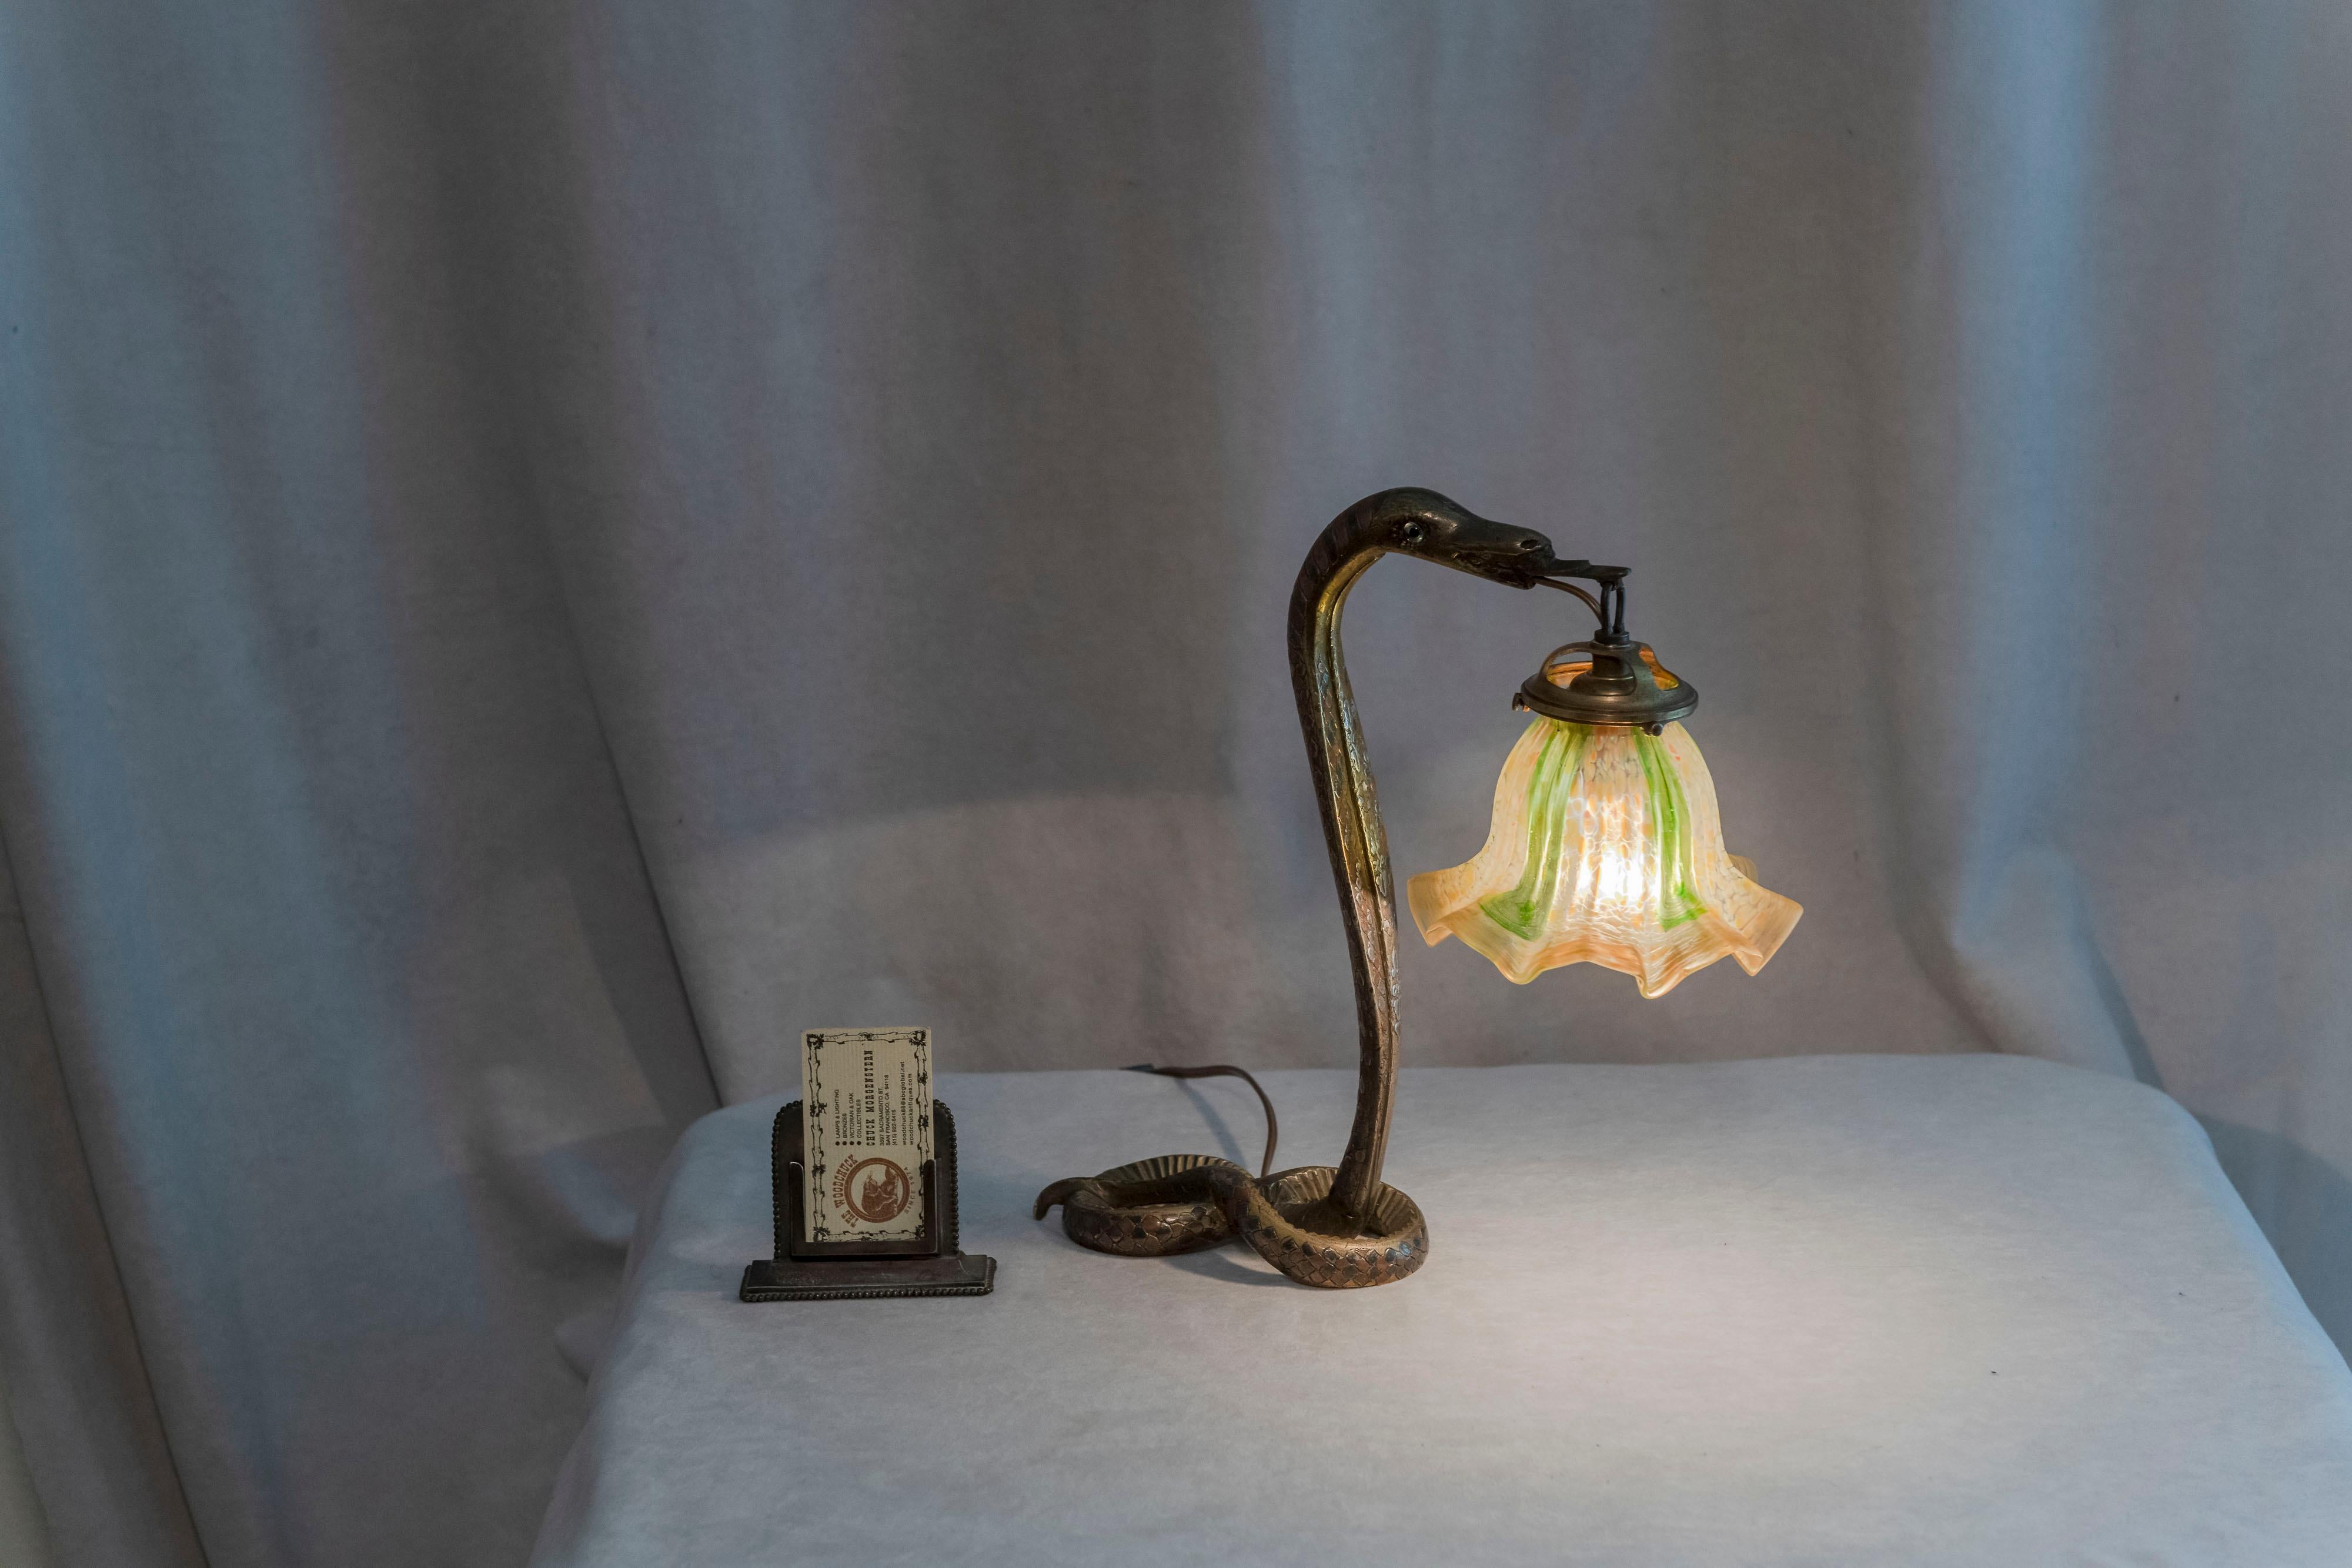 Cette lampe serpent en bronze offre certaines des caractéristiques les plus attrayantes. Le corps du serpent est assez détaillé avec de multiples couleurs en noir, cuivre et argent. Il convient de noter en particulier le motif complexe en relief de